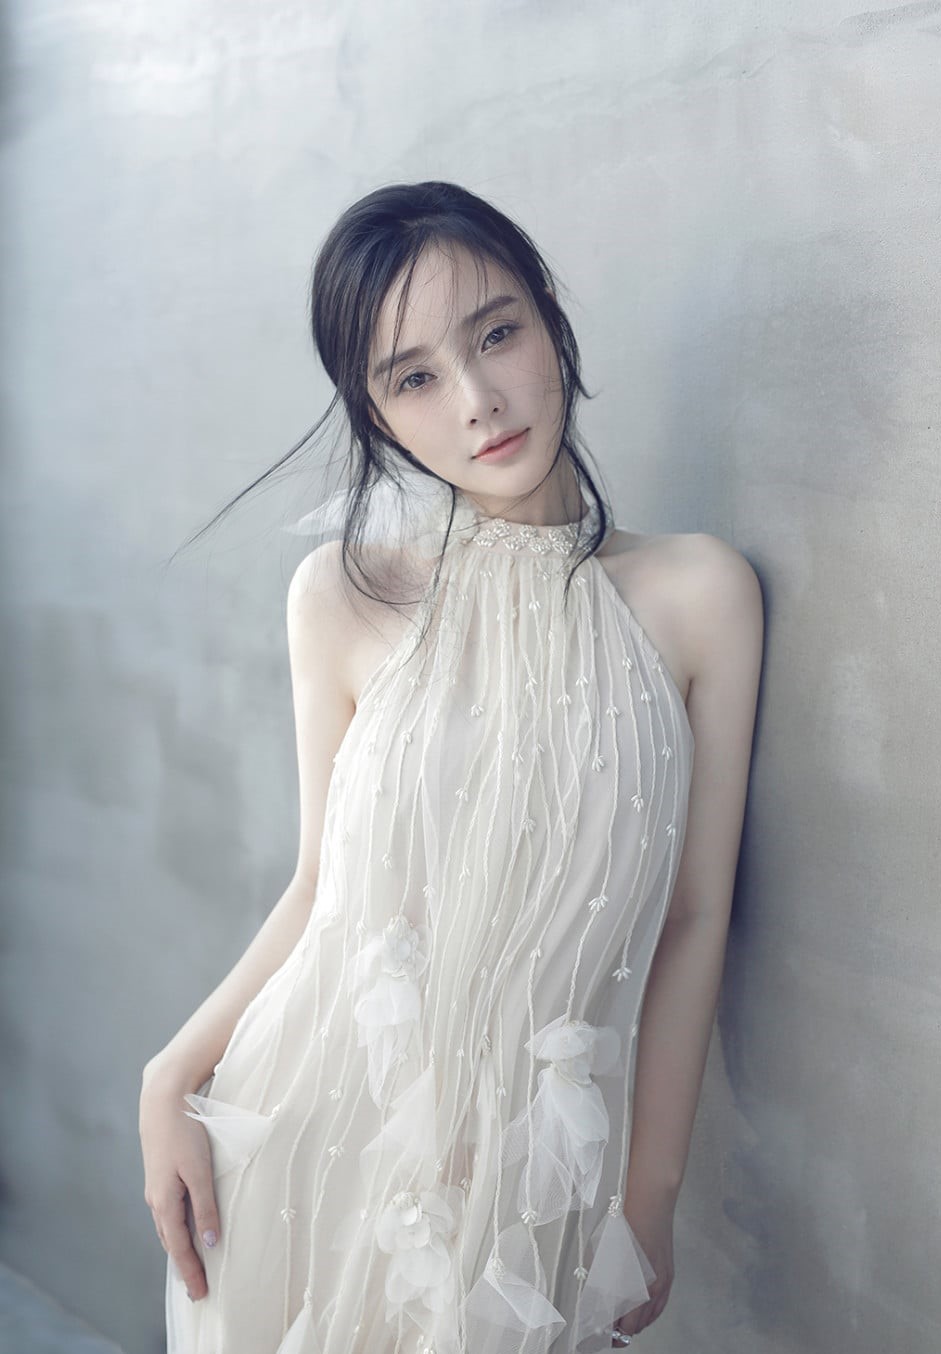 Chinese av actress